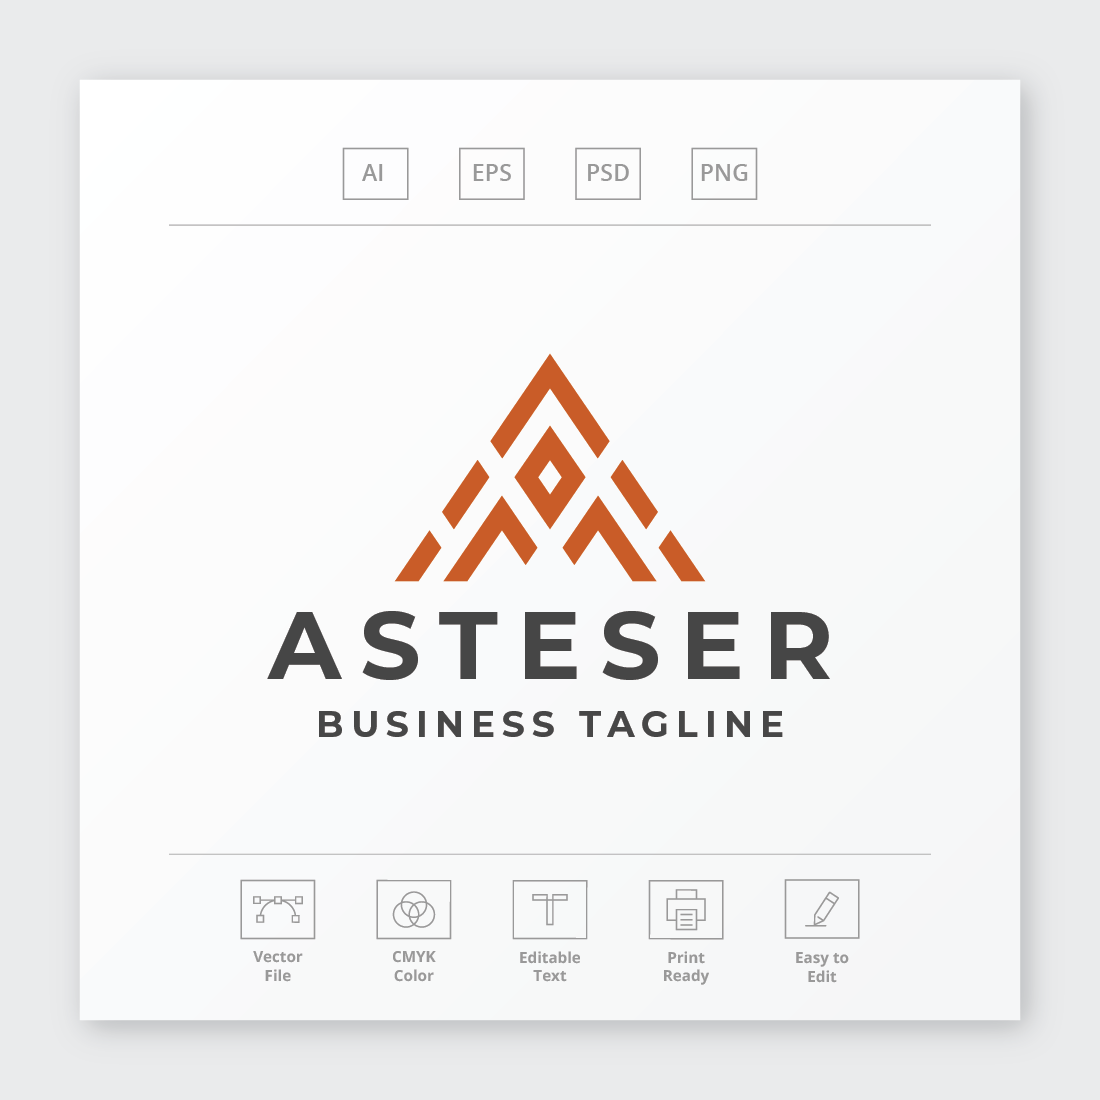 Asteser Letter A Logo cover image.